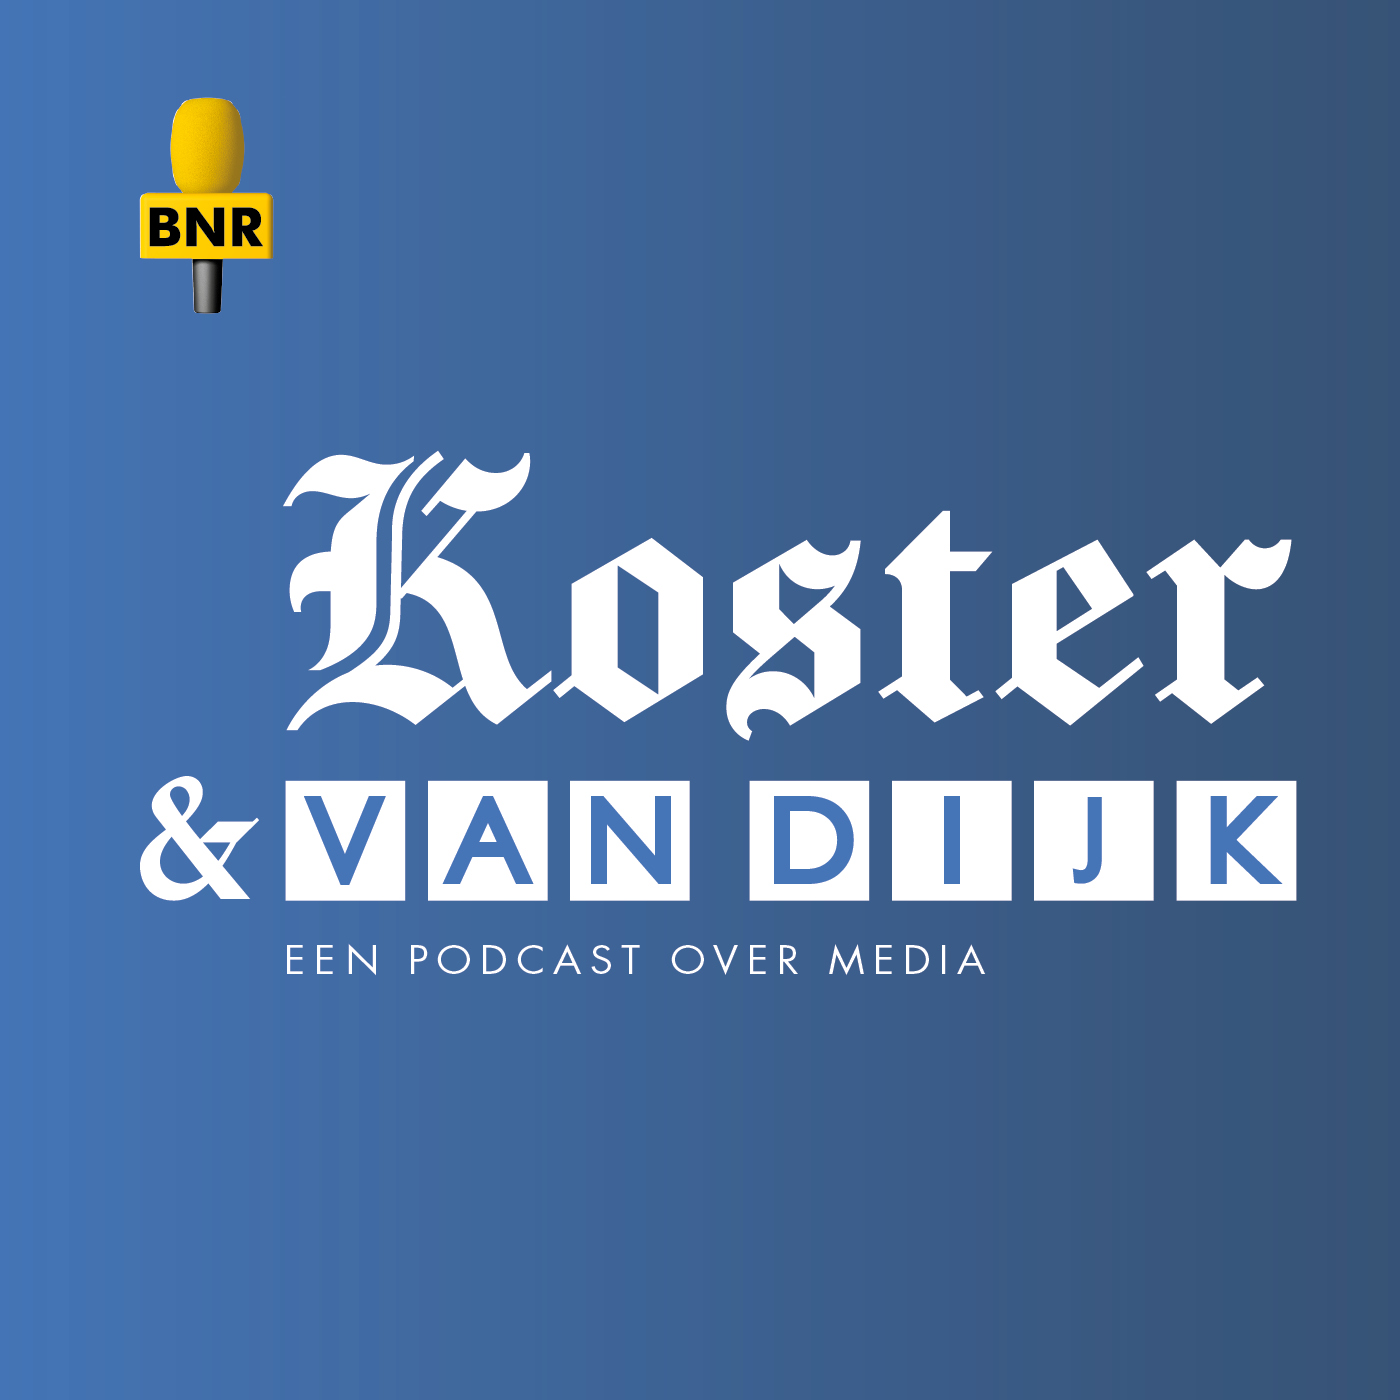 Koster en Van Dijk